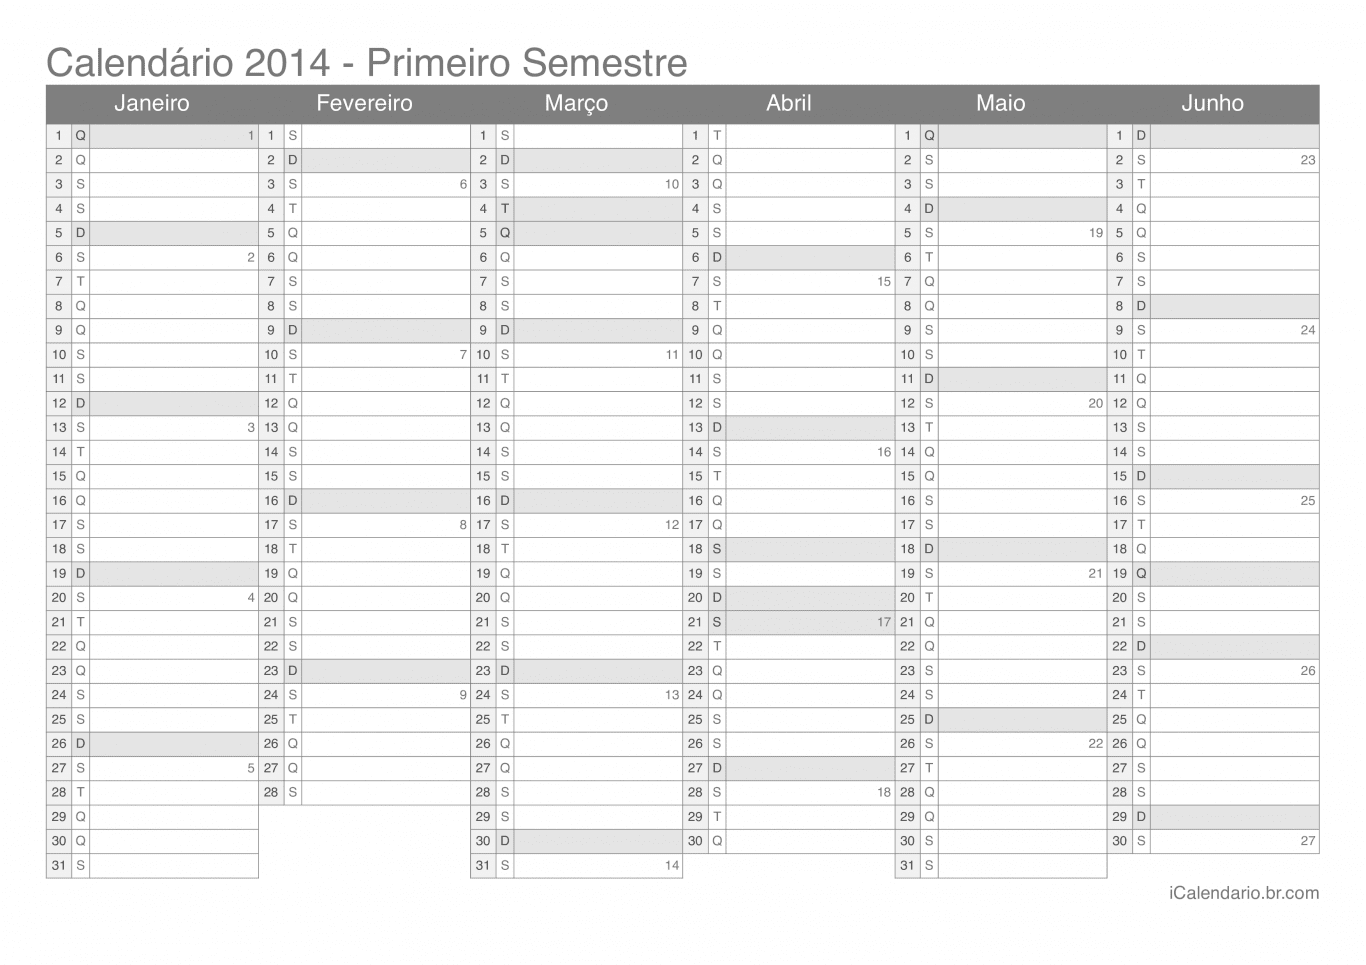 Calendário por semestre com números da semana 2014